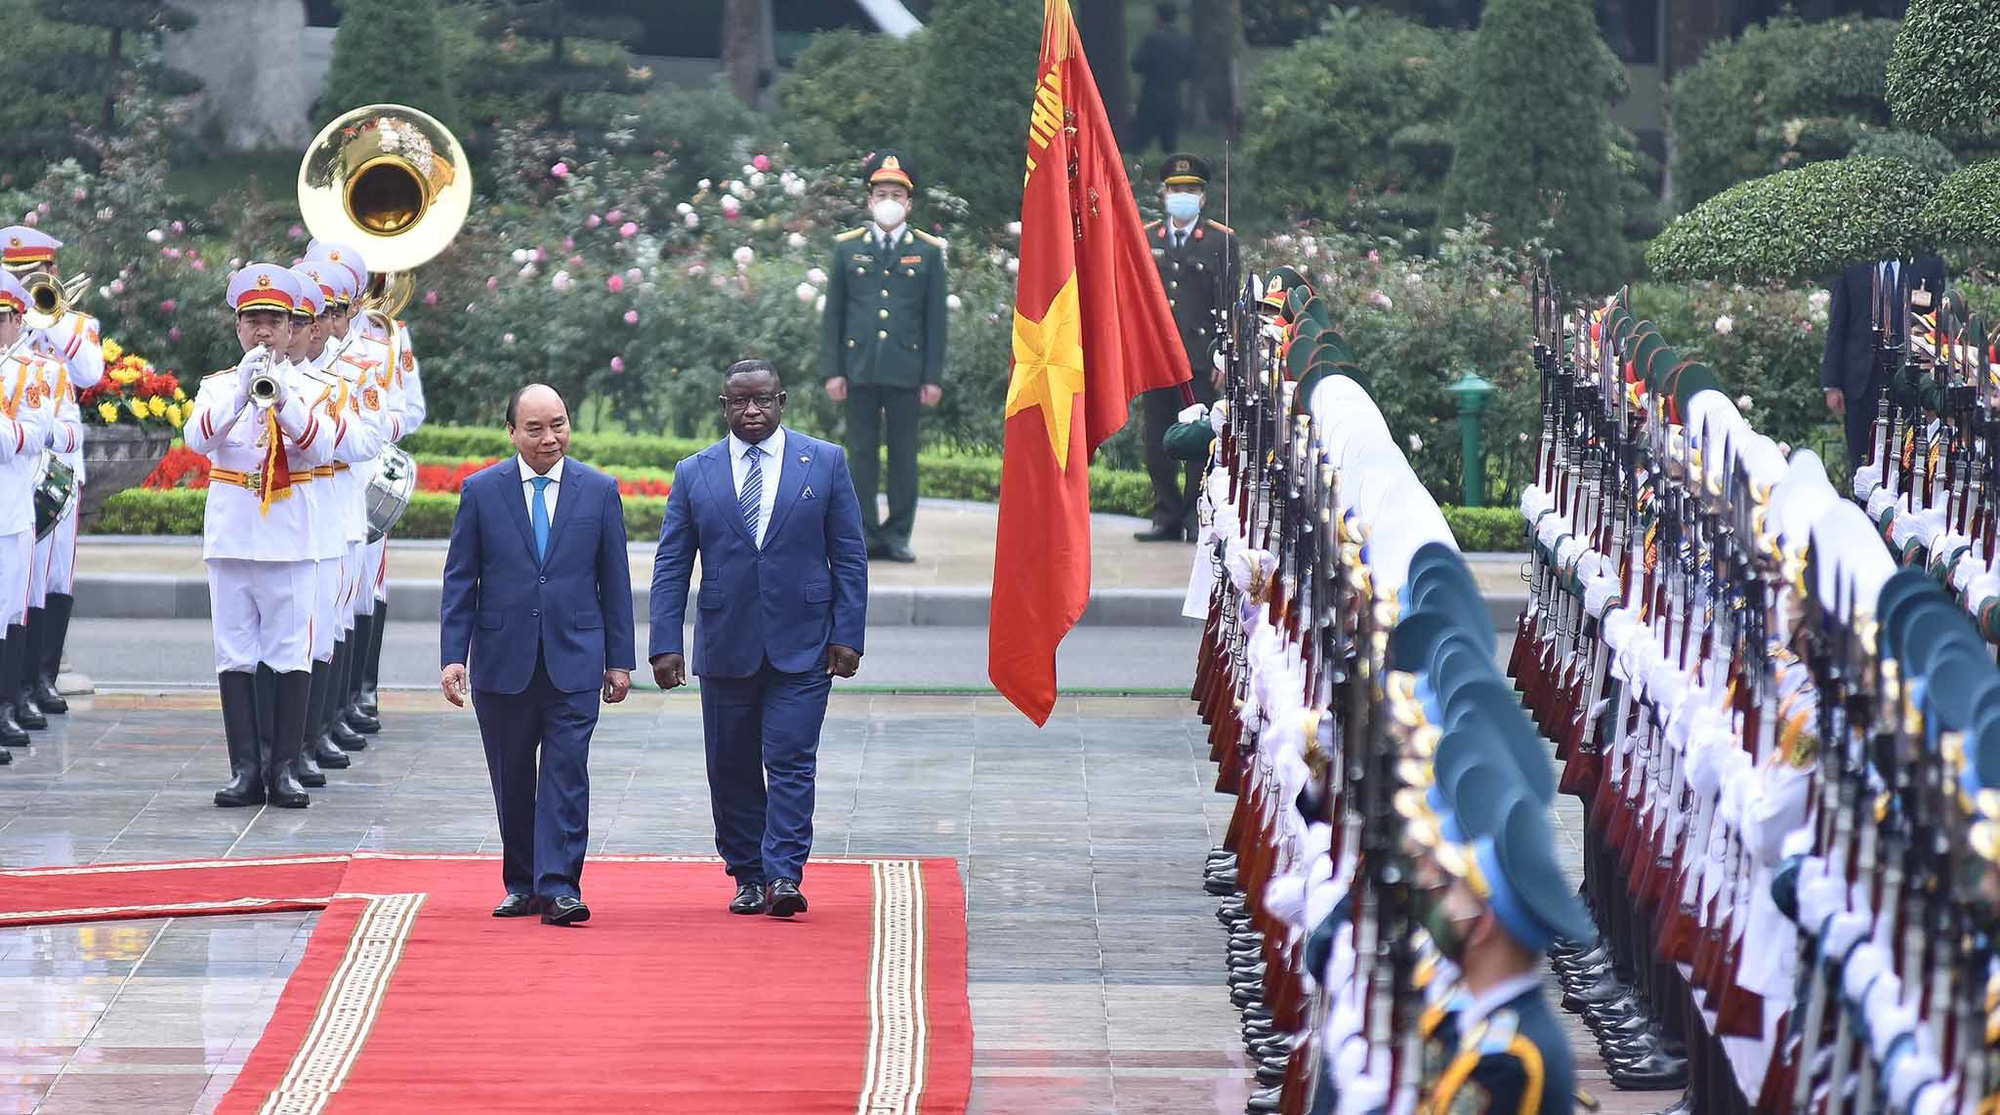 Tổng thống Sierra Leone thăm chính thức Việt Nam, 2 bên ký kết 3 văn kiện hợp tác - Ảnh 1.